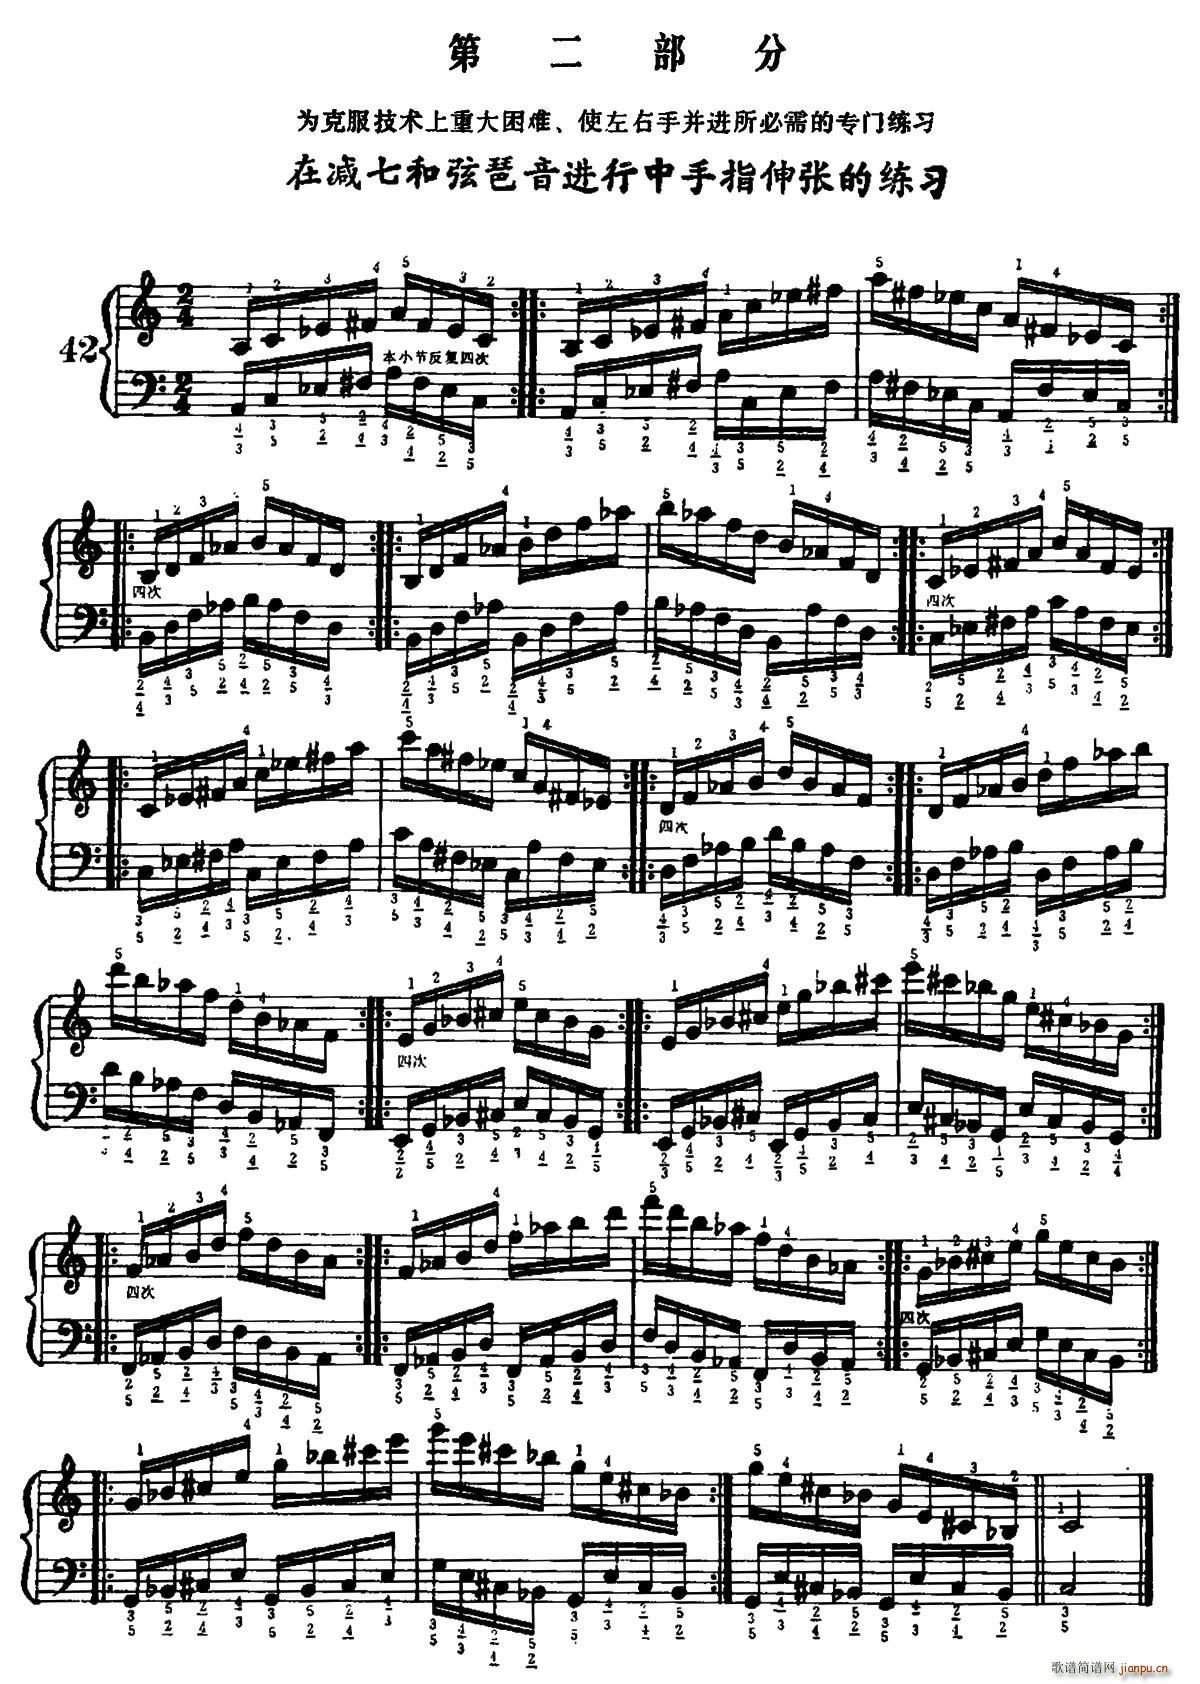 手风琴手指练习 第二部分 在减七和弦琶音进行中手指的伸张练习(手风琴谱)1